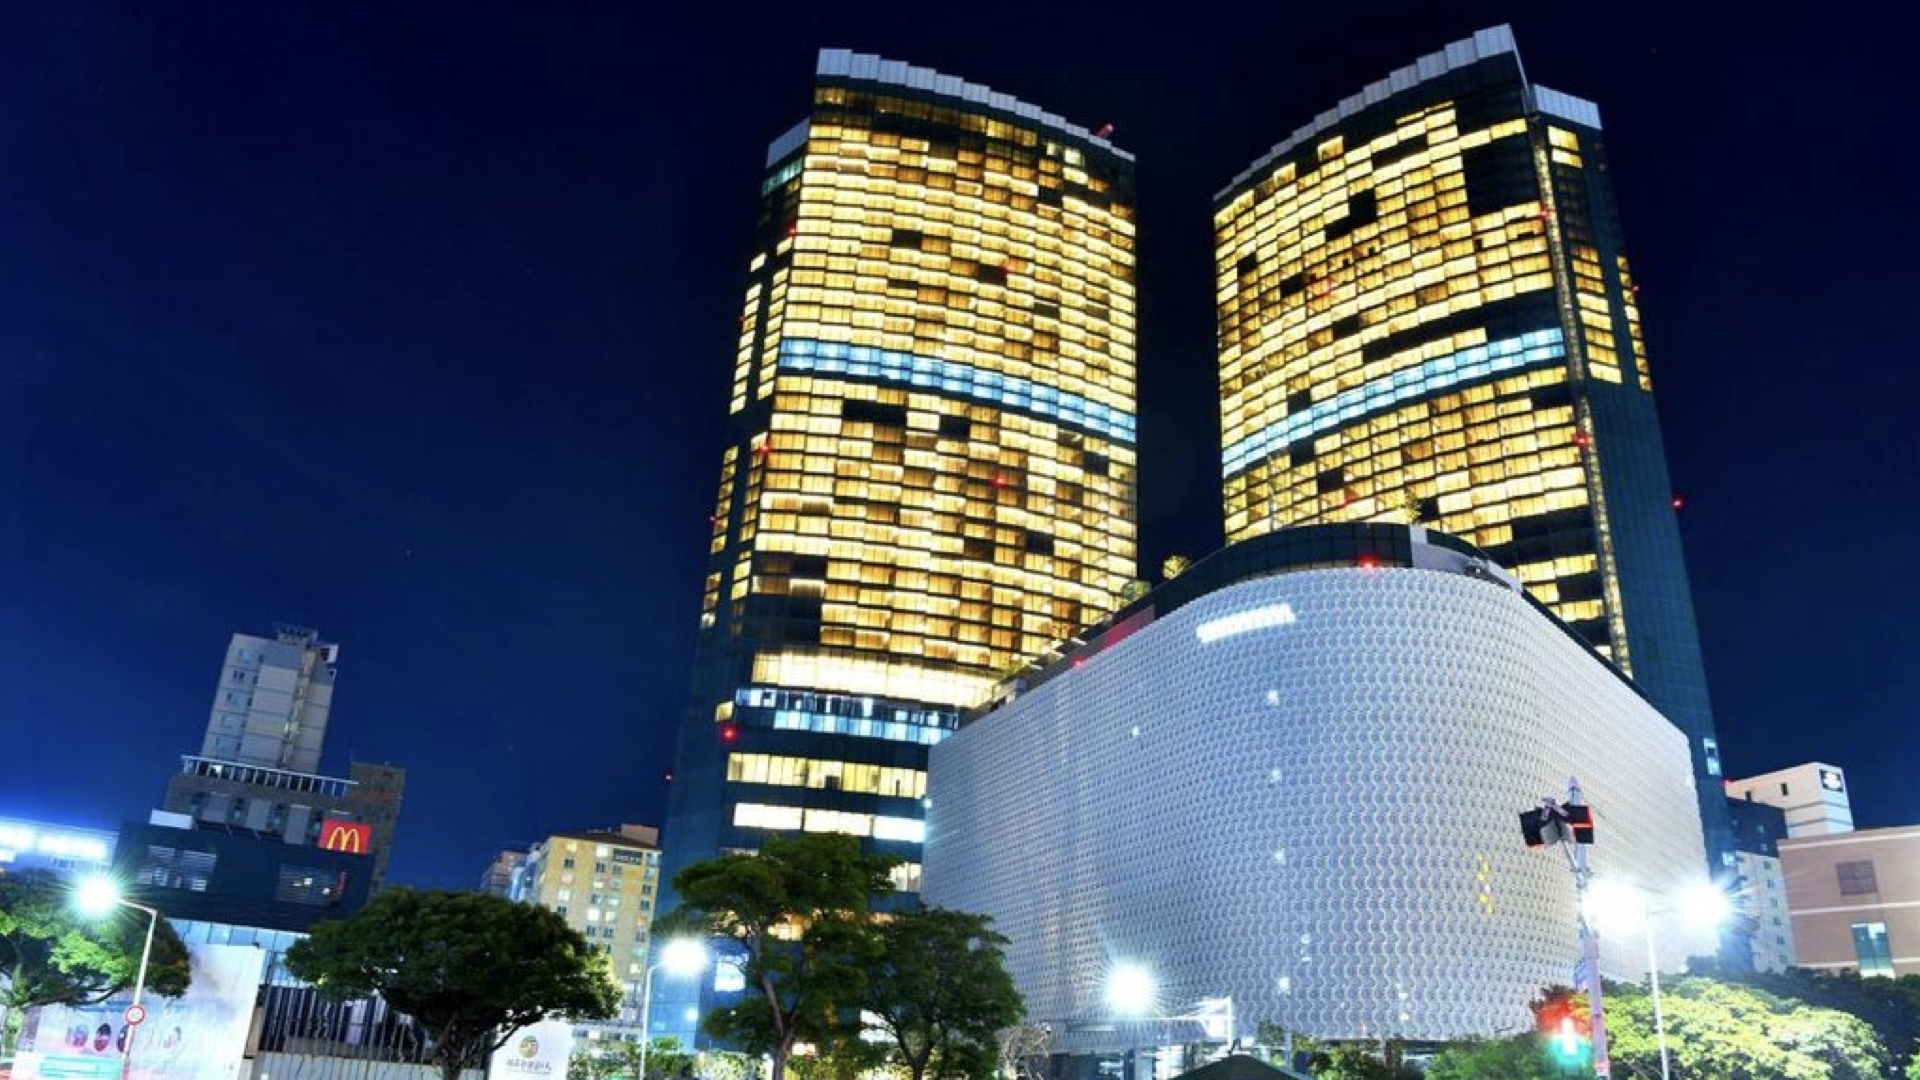 Jeju Dream Tower casino revenue down 9 percent m-o-m in November 